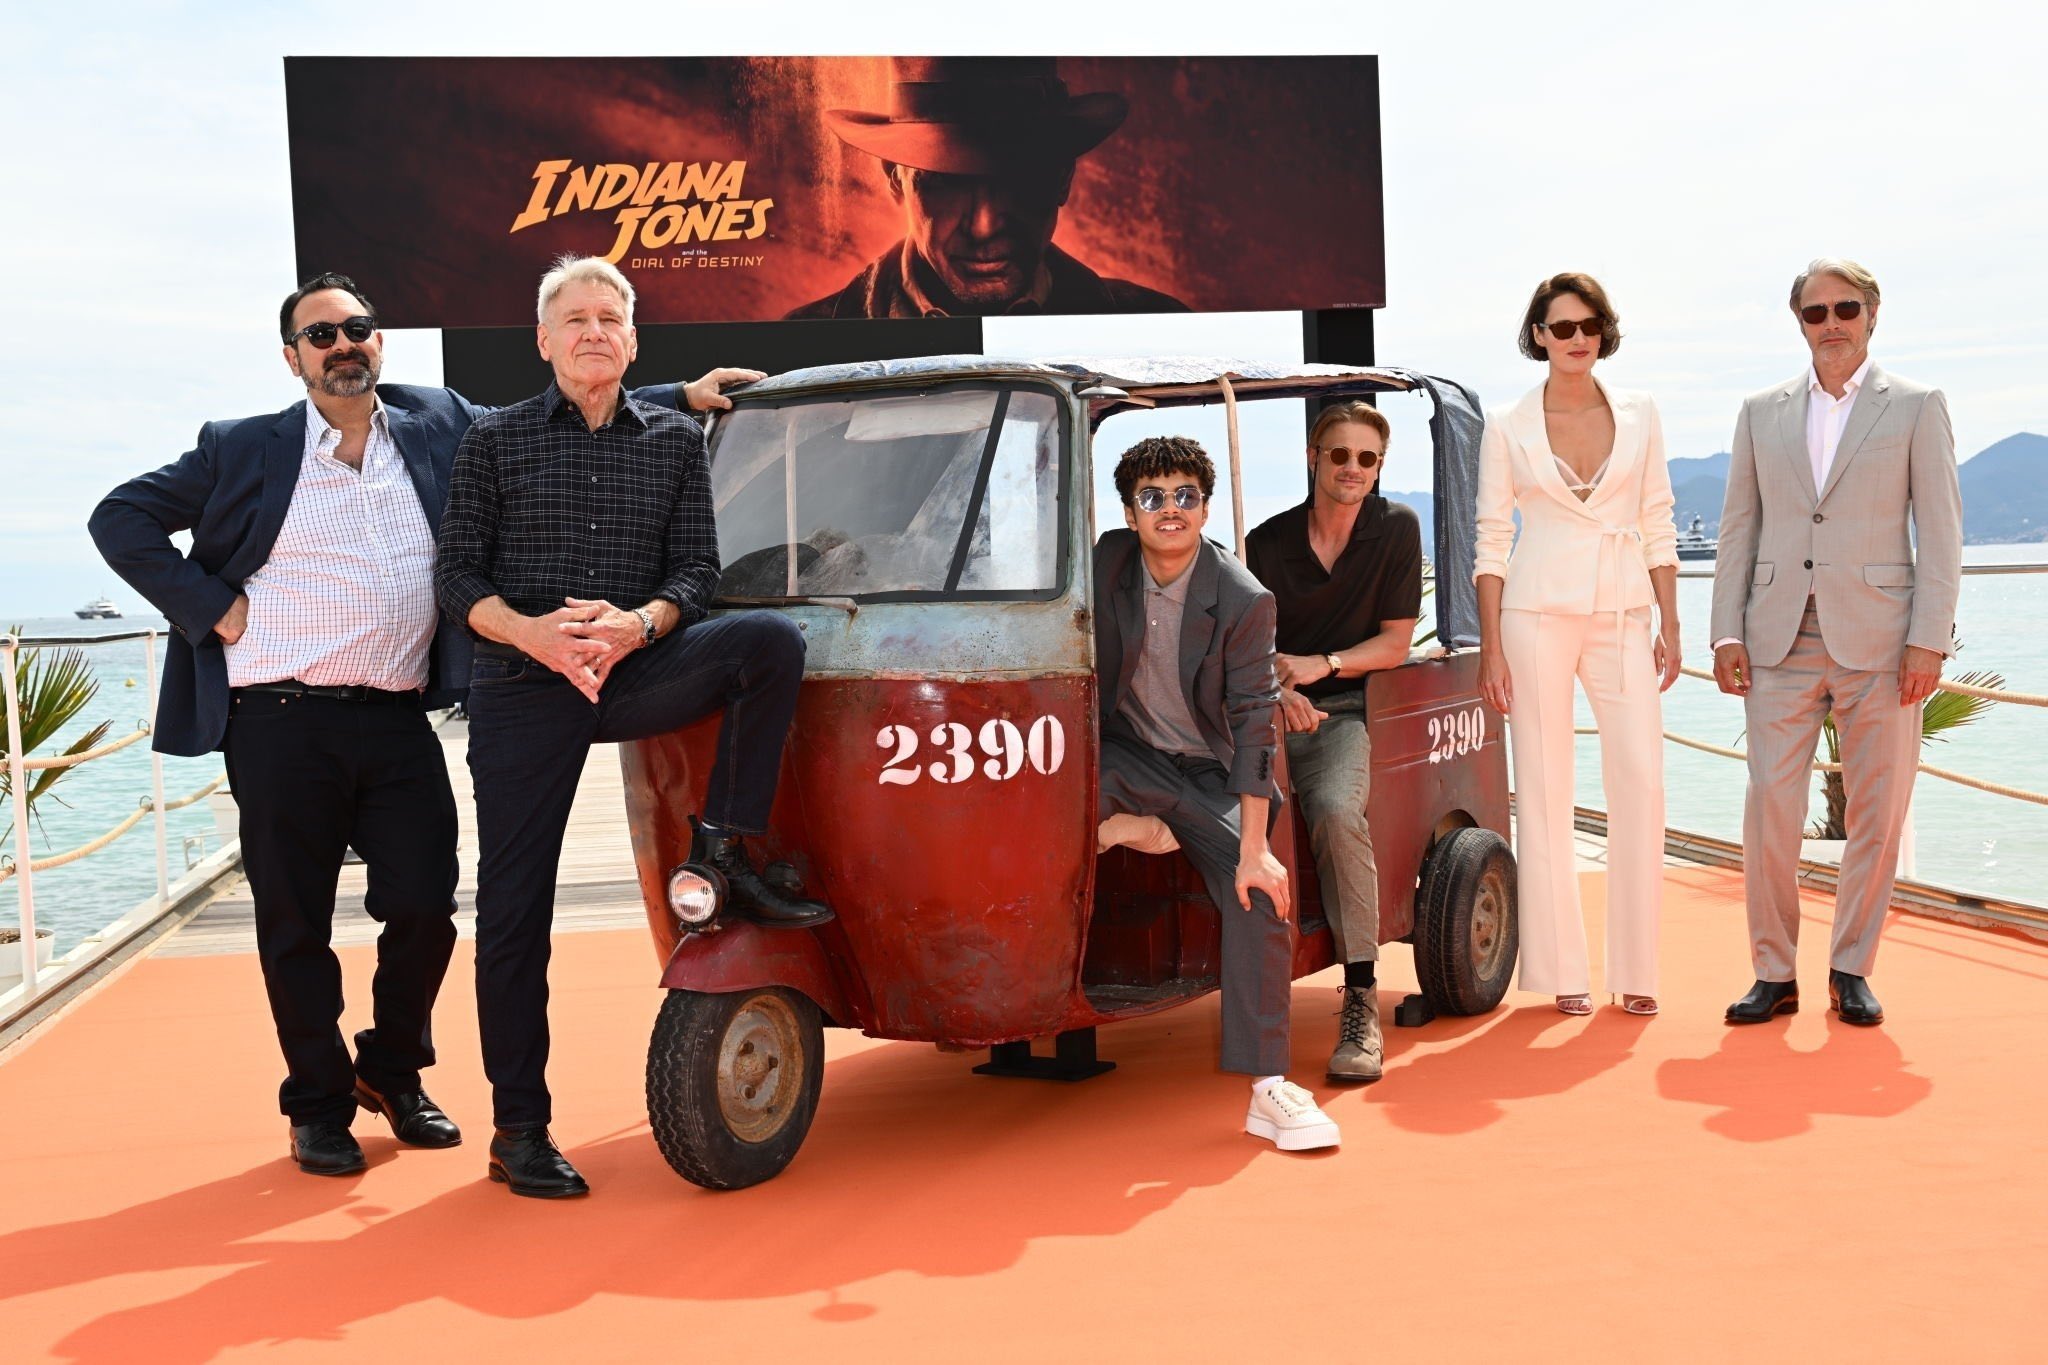 1 Indiana Jones e a Relíquia do Destino tem premier de gala em Cannes com ovação a Ford